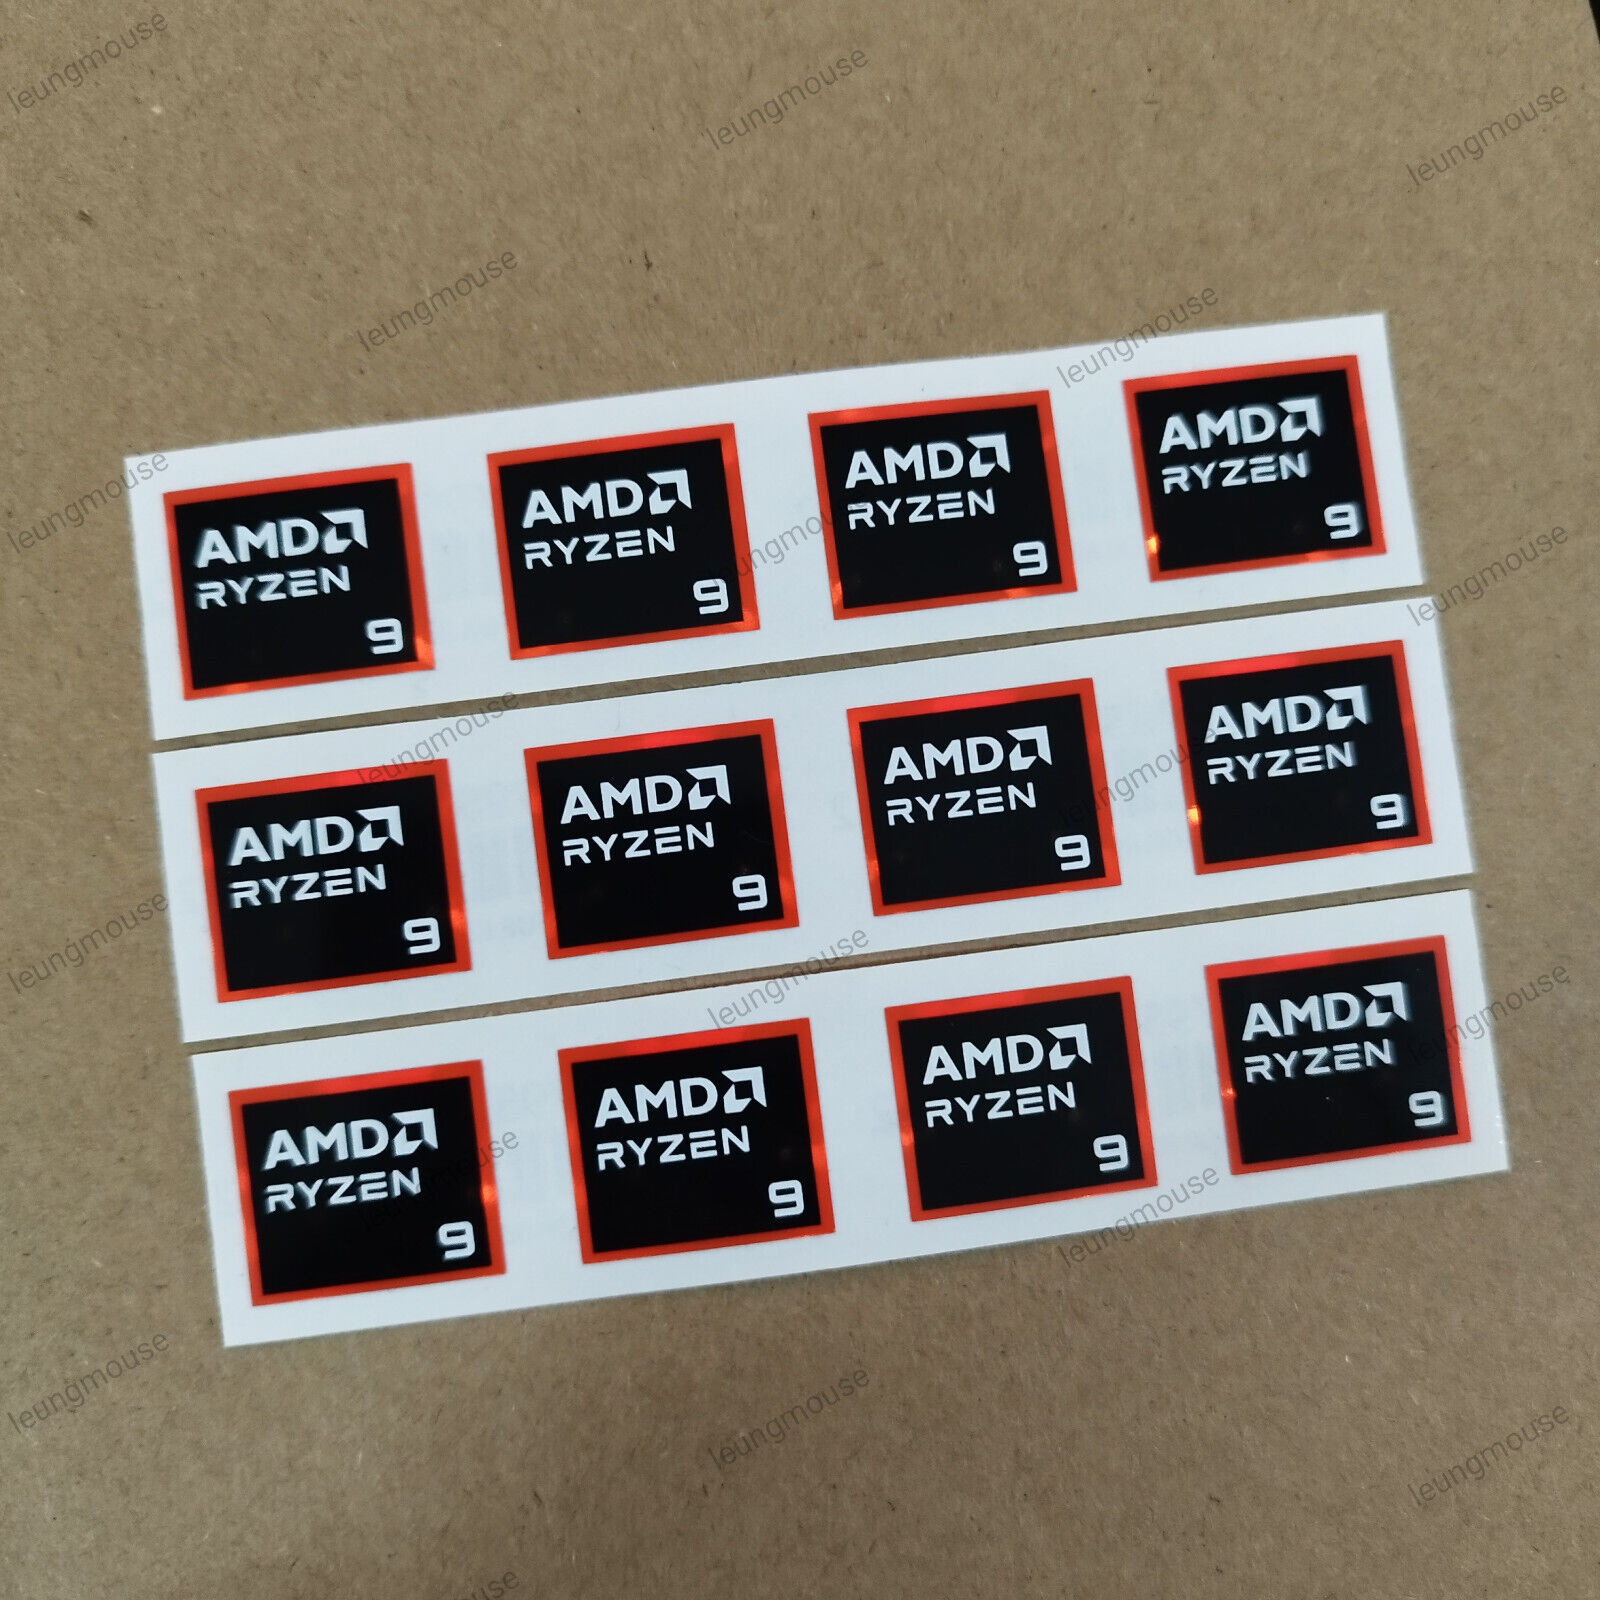 AMD RYZEN 9 STICKER 17MM X 20MM 2024 VERSION Genuine & New ( 12 PCS per lot )